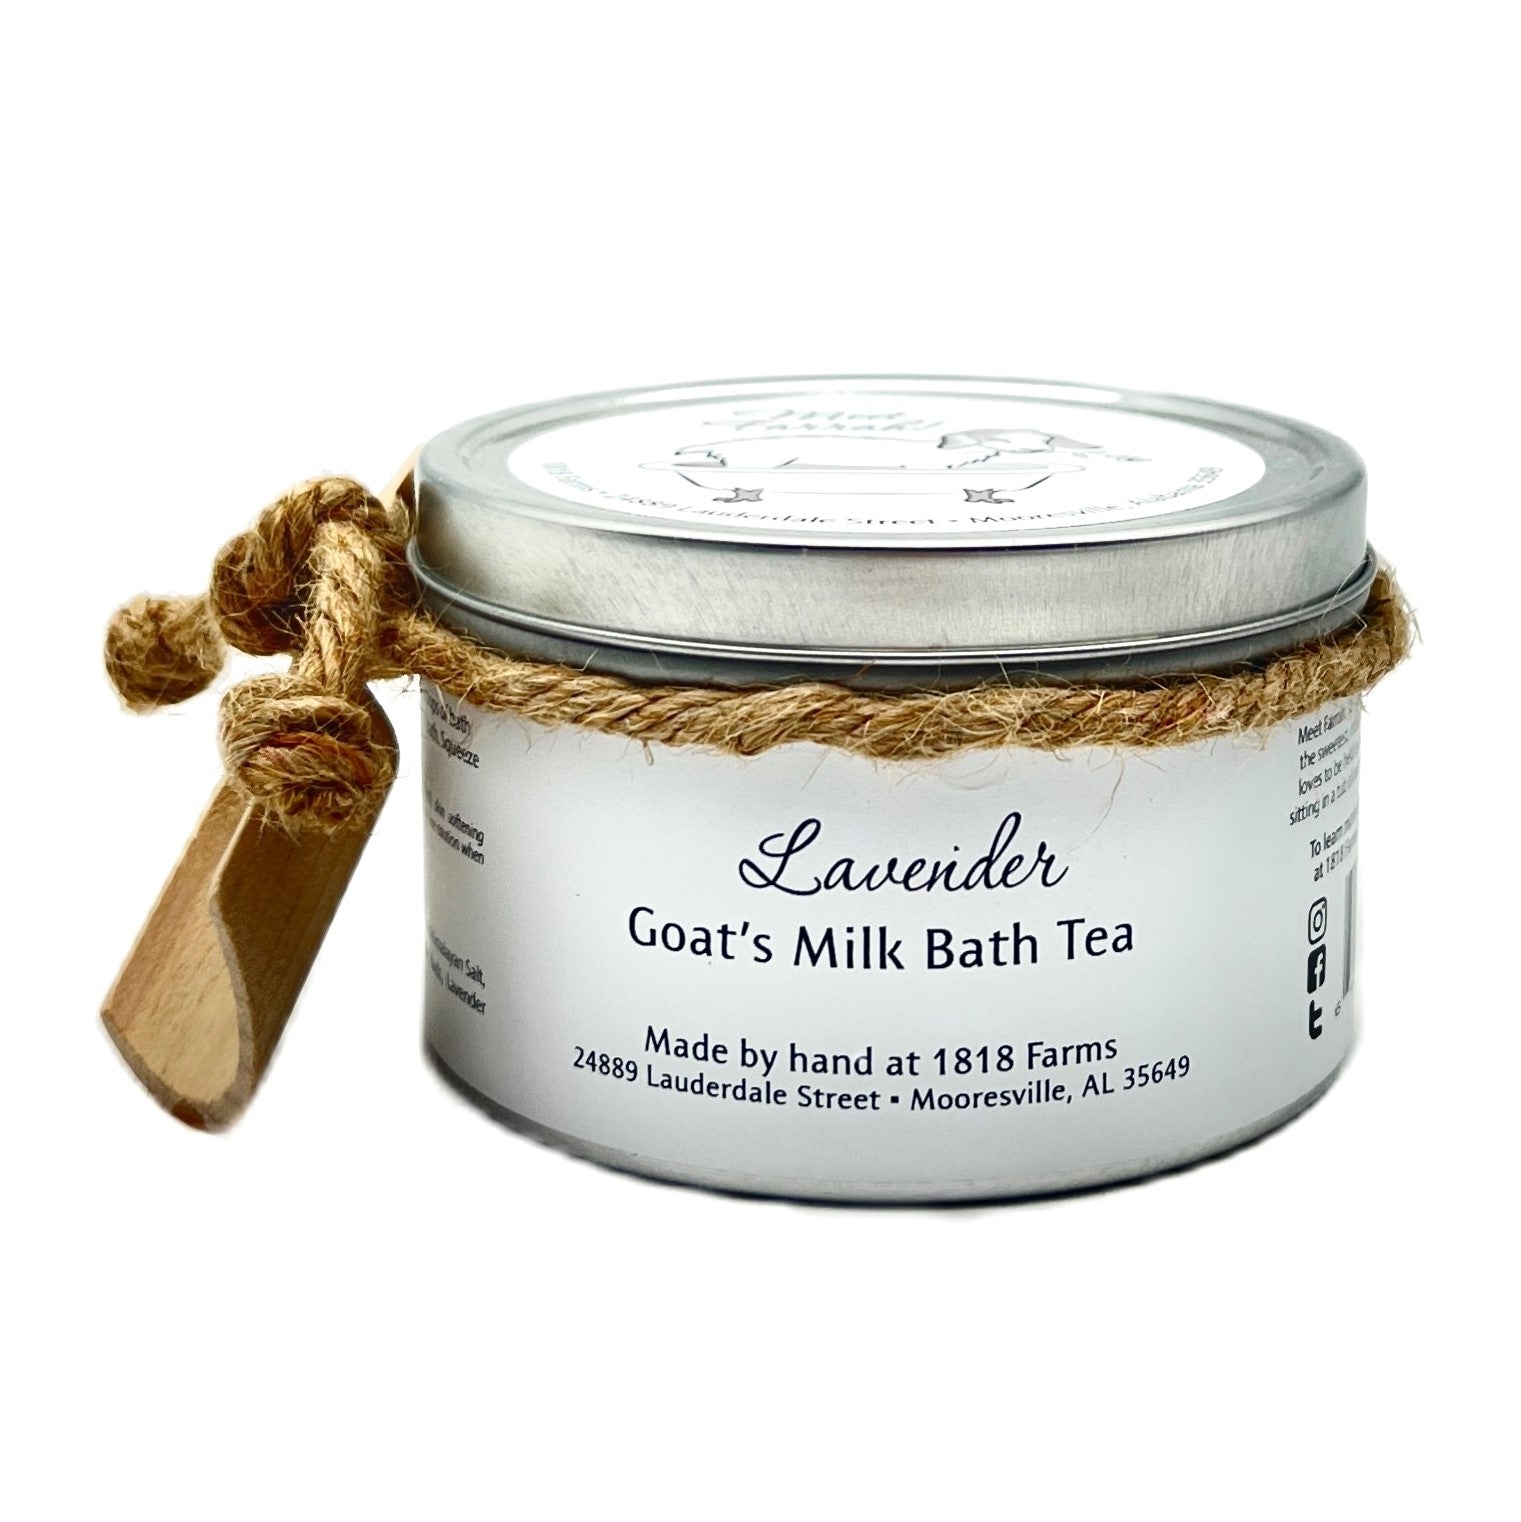 1818 Farms - Lavender Goat's Milk Bath Tea - Tin (default)